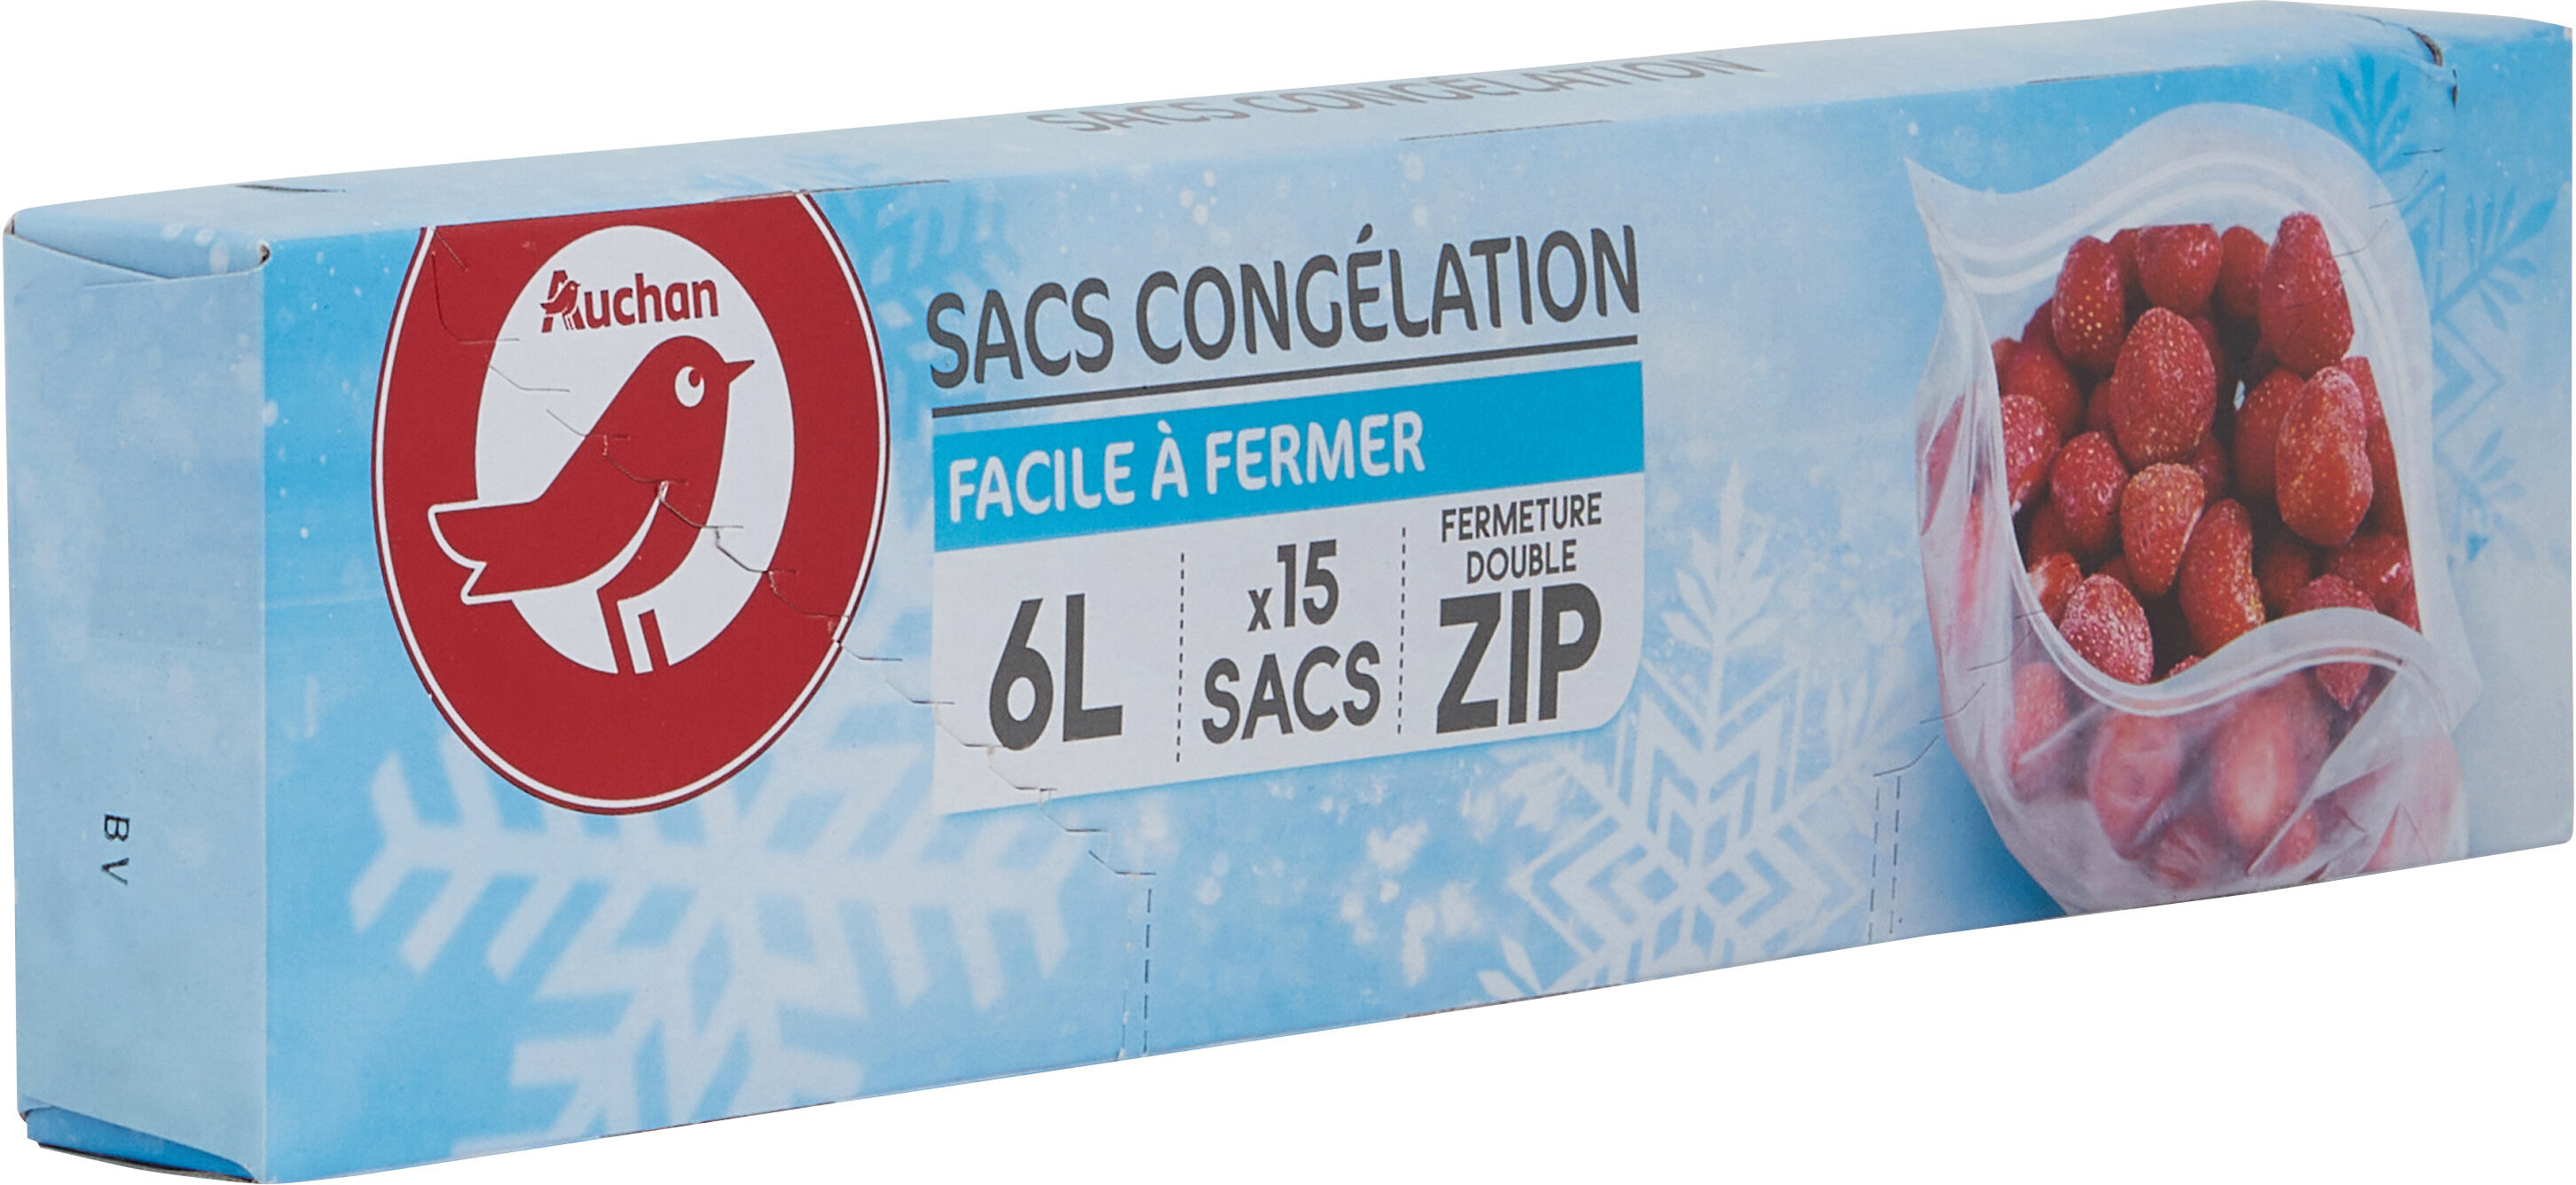 Sacs congélation fermeture double ZIP 6L - Produit - fr